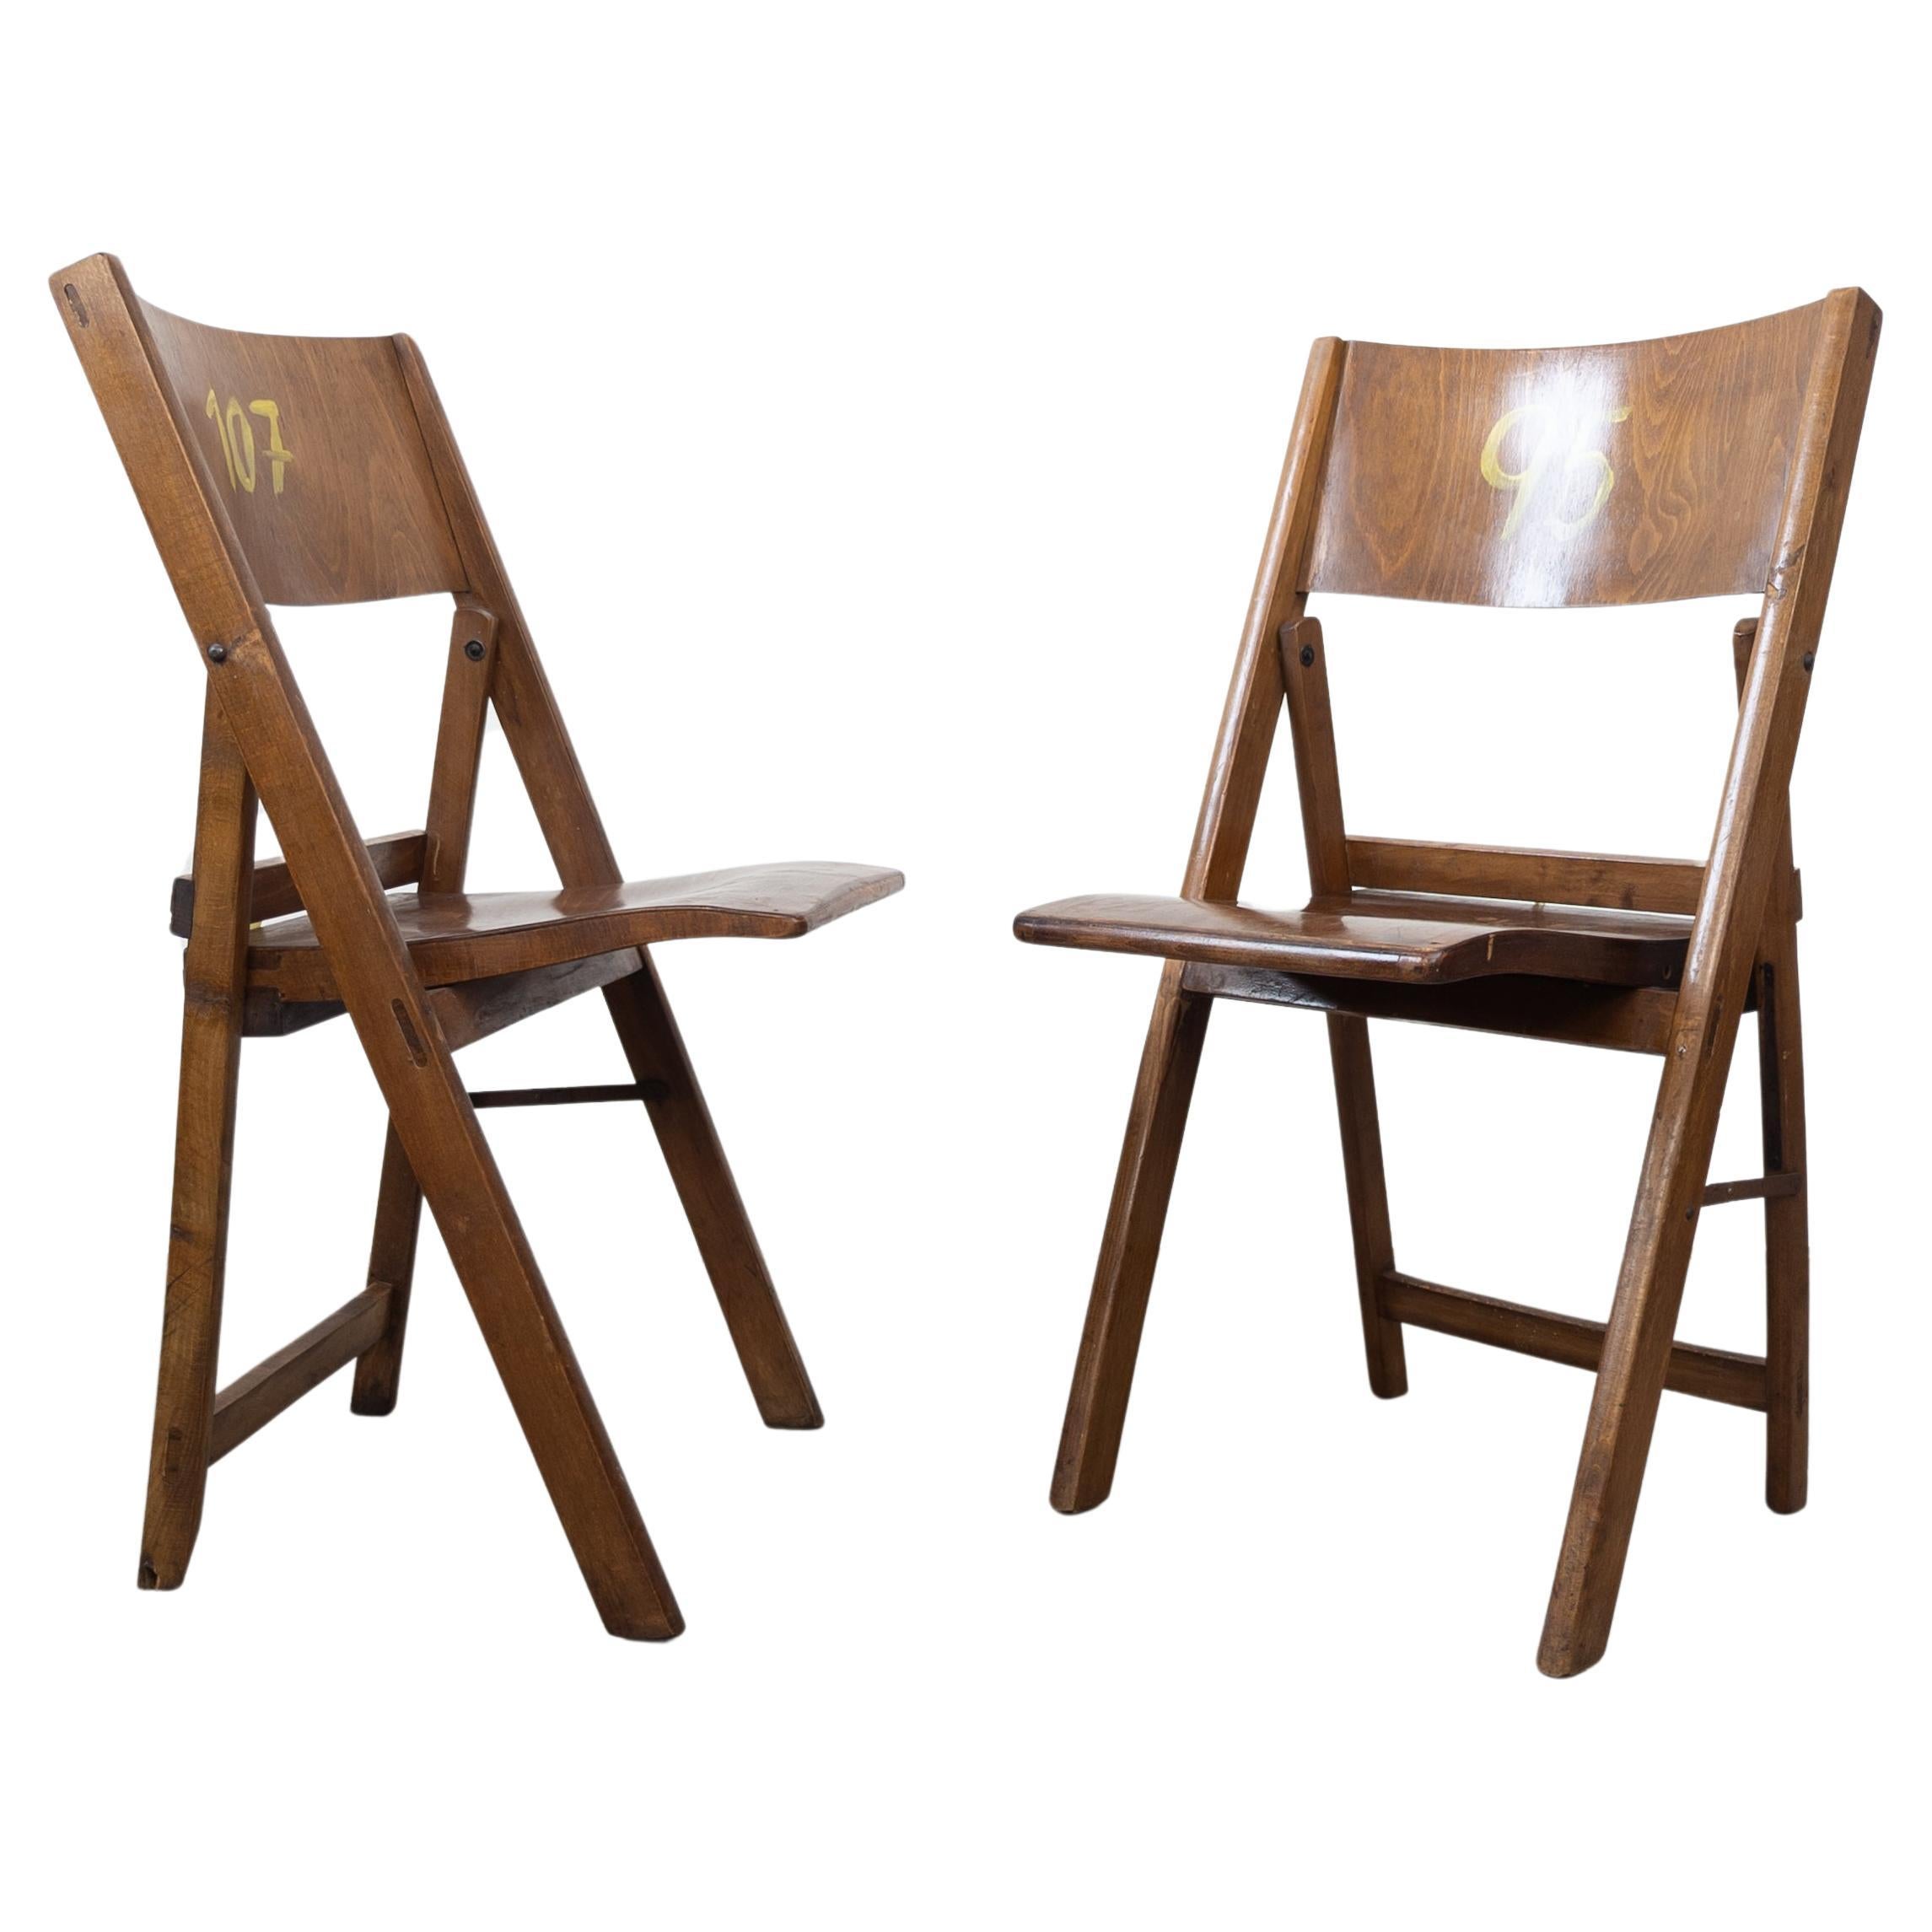 Paire de chaises pliantes Thonet vintage des années 1930